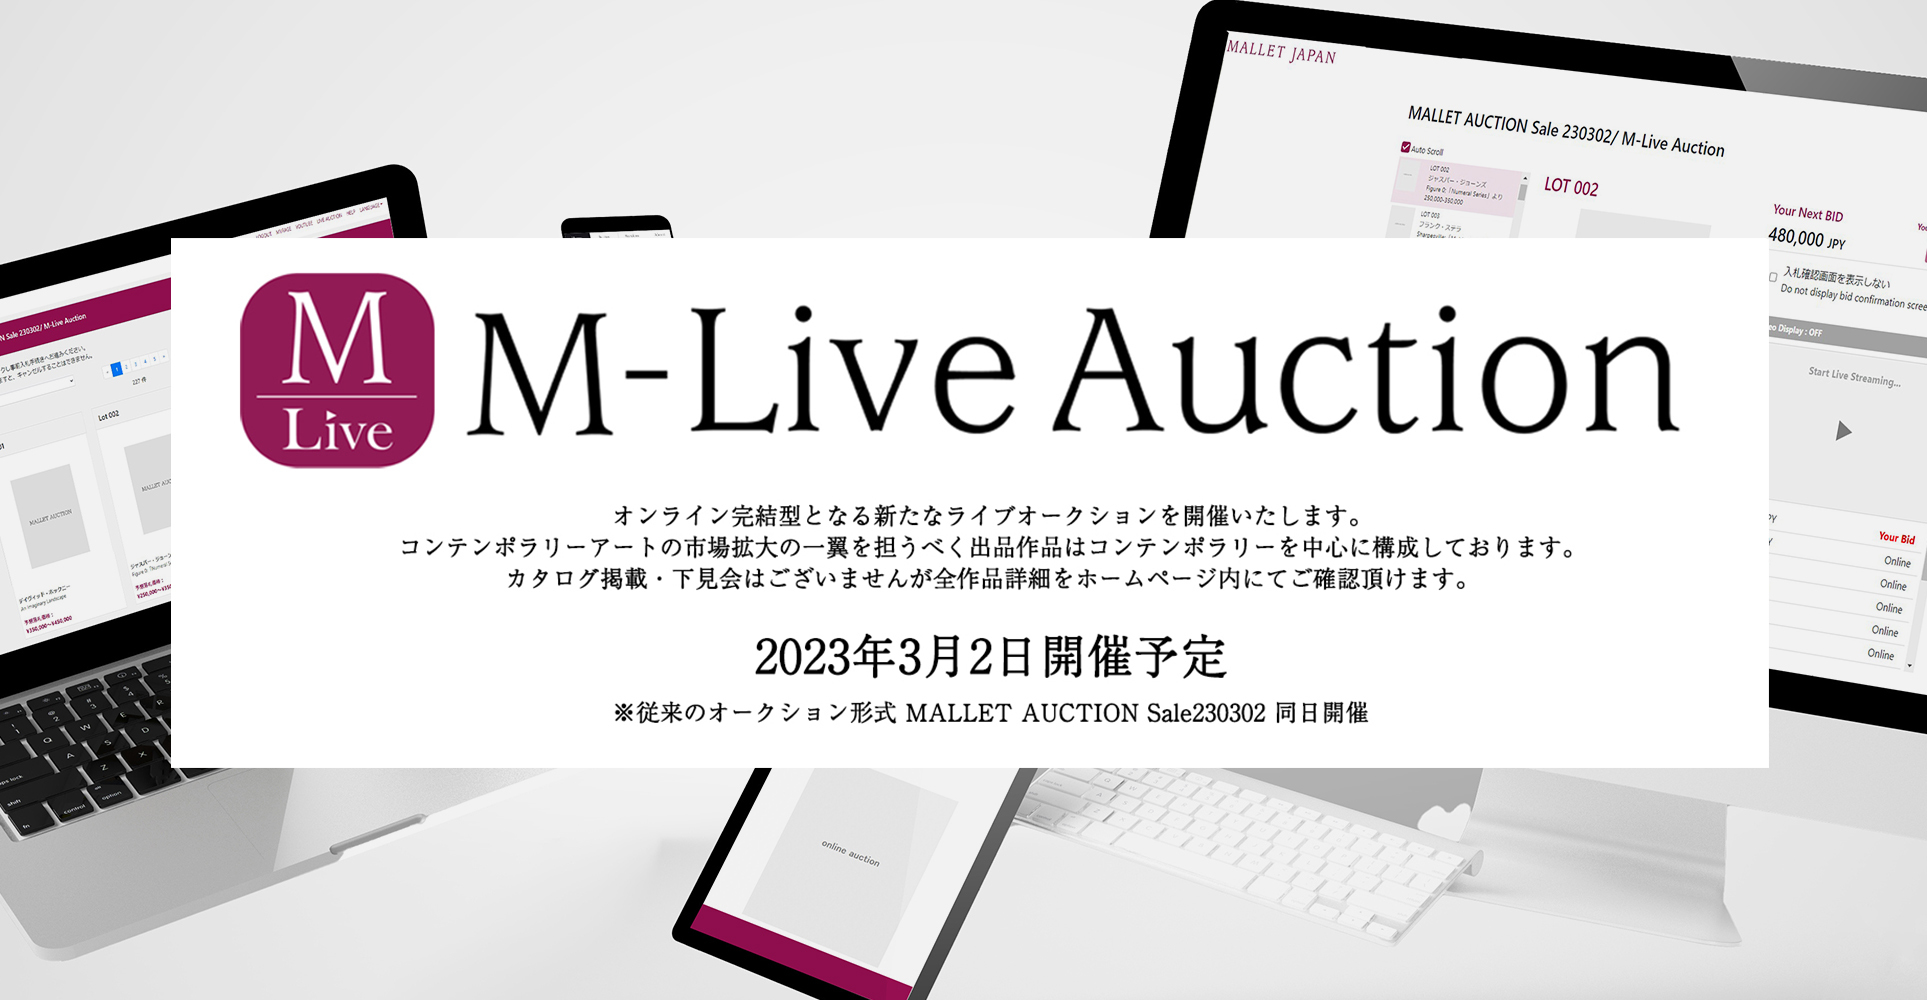 VɎn܂IC^CuI[NV@M-Live AuctionE}bgI[NVߌA[gZ[@2023N32@2Z[J